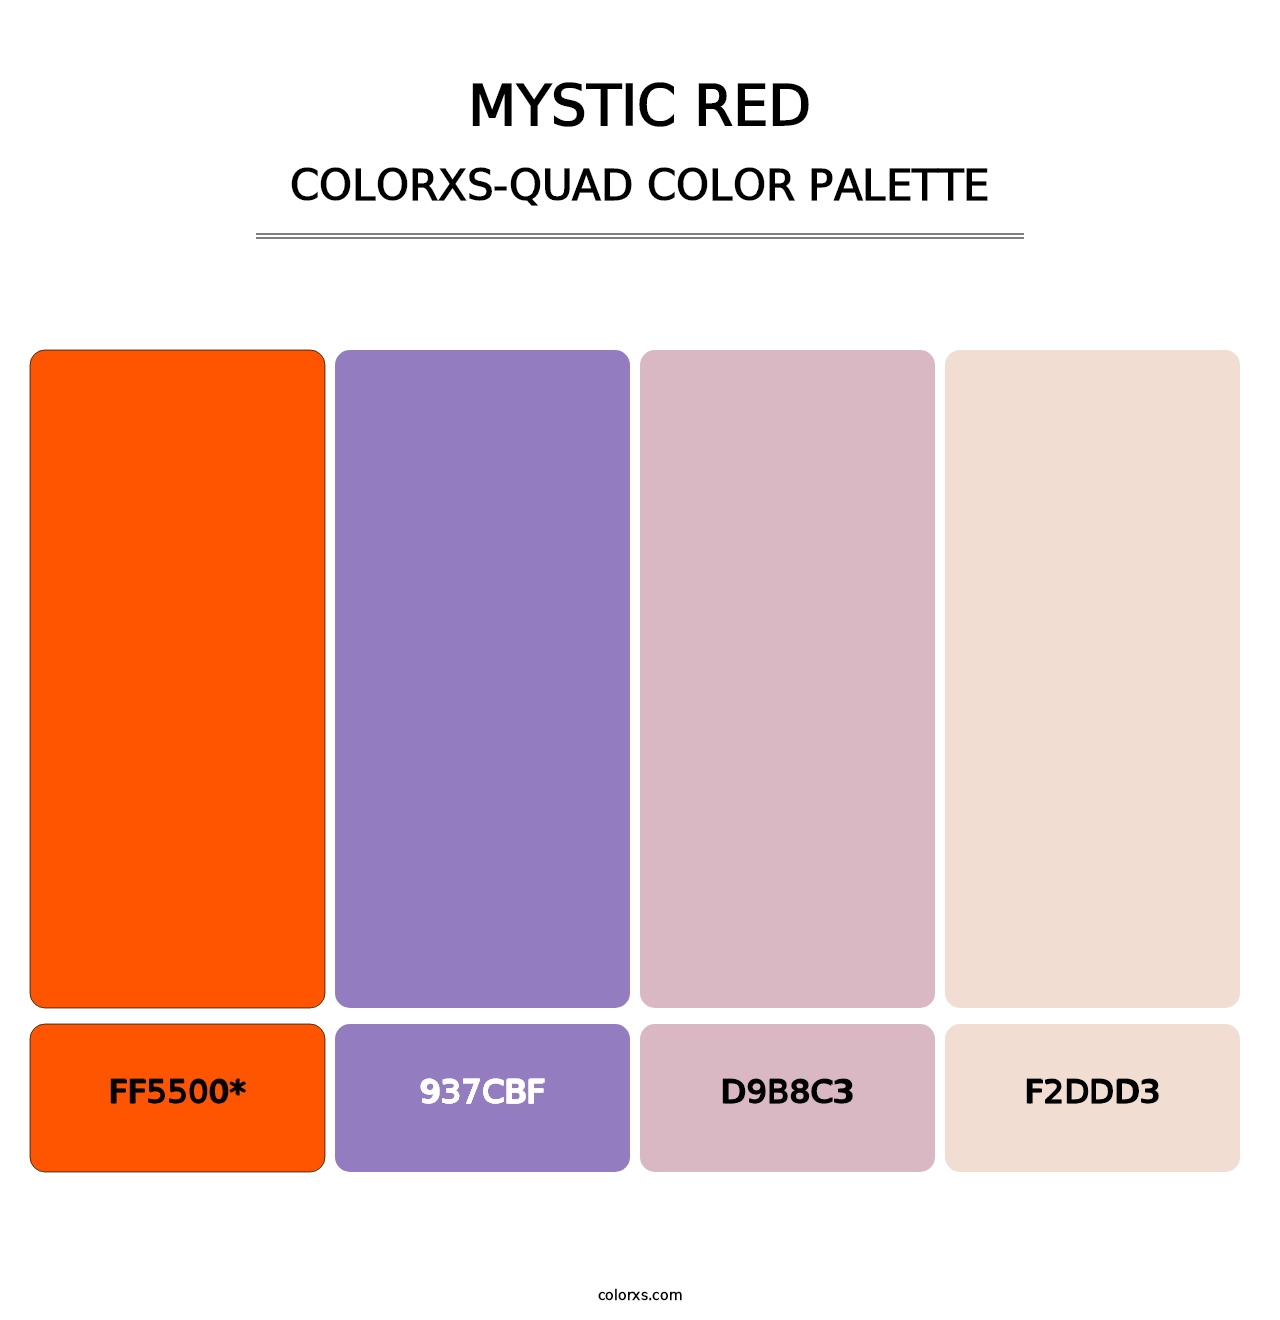 Mystic Red - Colorxs Quad Palette